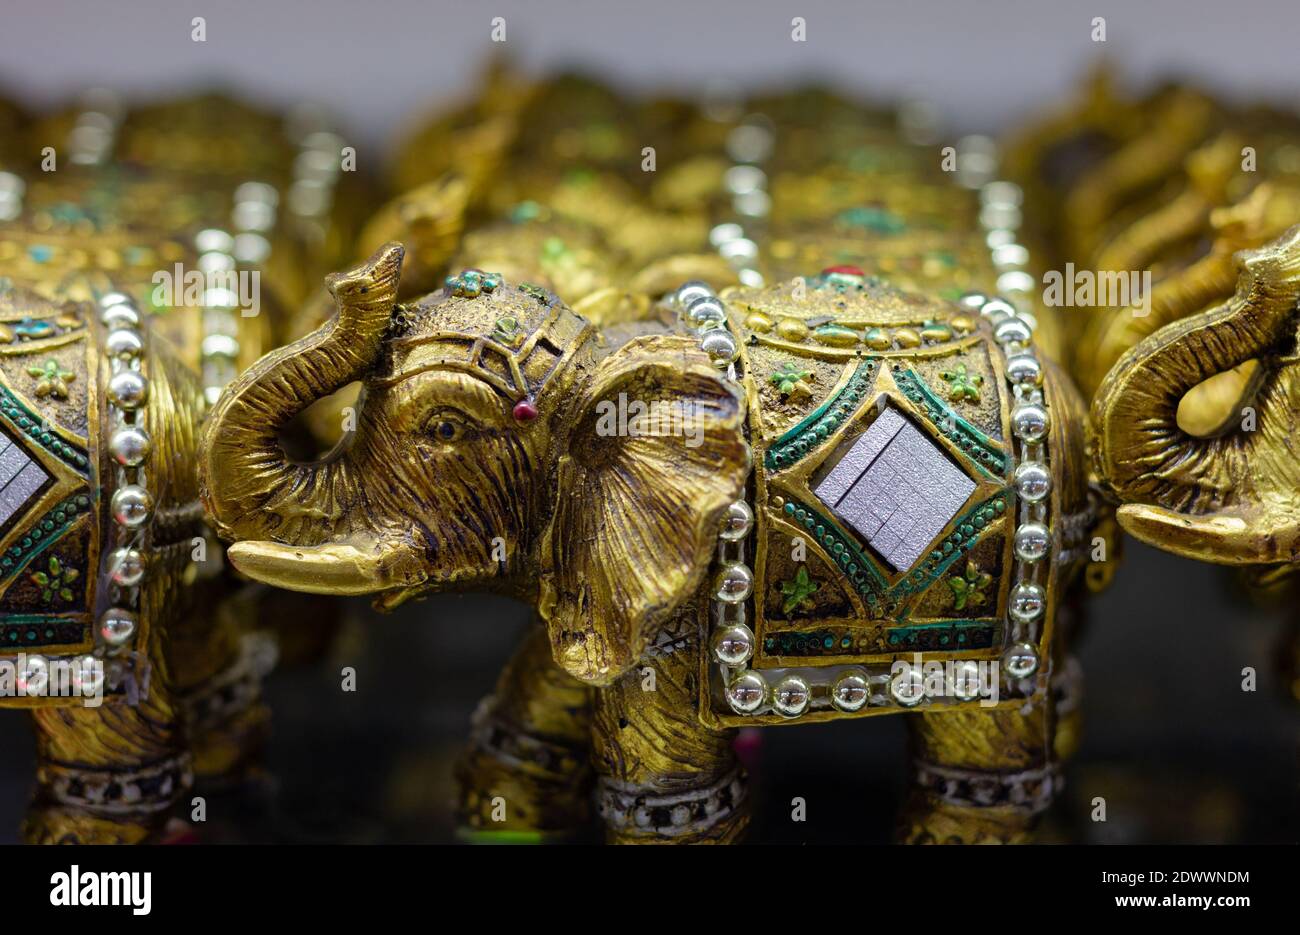 Lo mejor en la categoría «Elefante de la suerte» de imágenes, fotos de  stock e ilustraciones libres de regalías